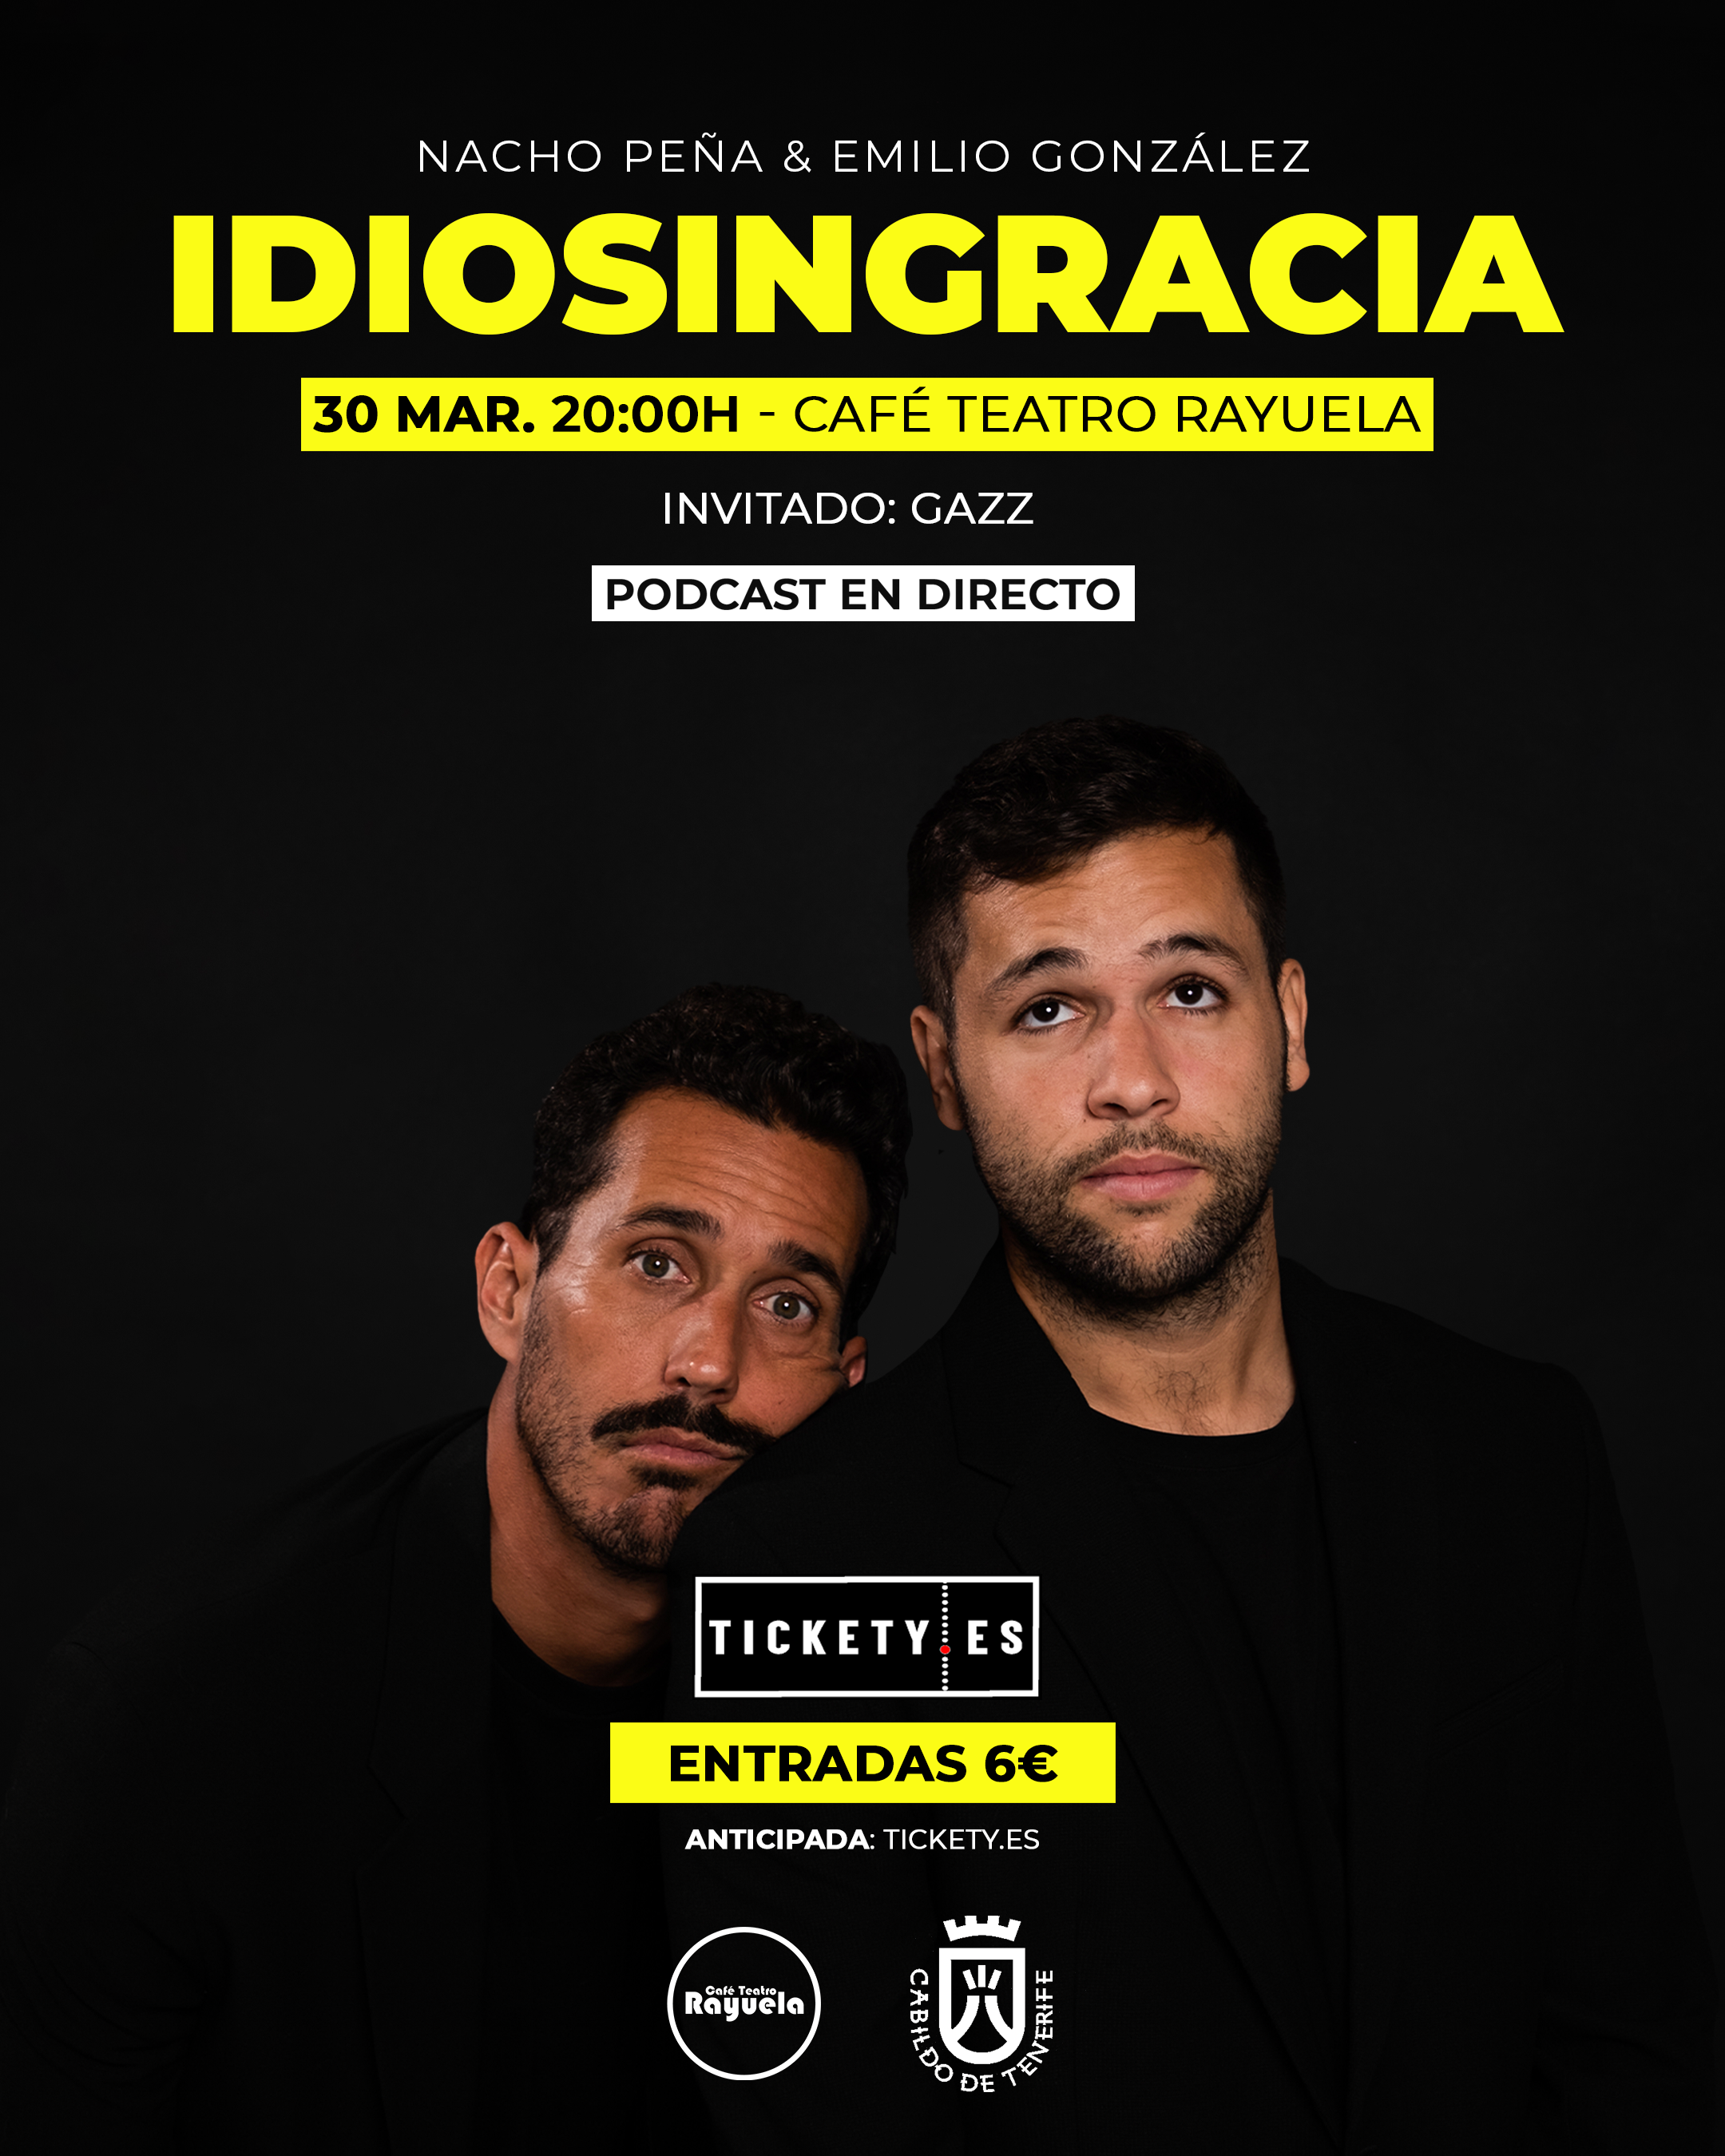 “Idiosingracia”, Podcast en directo de Nacho Peña y Emilio González